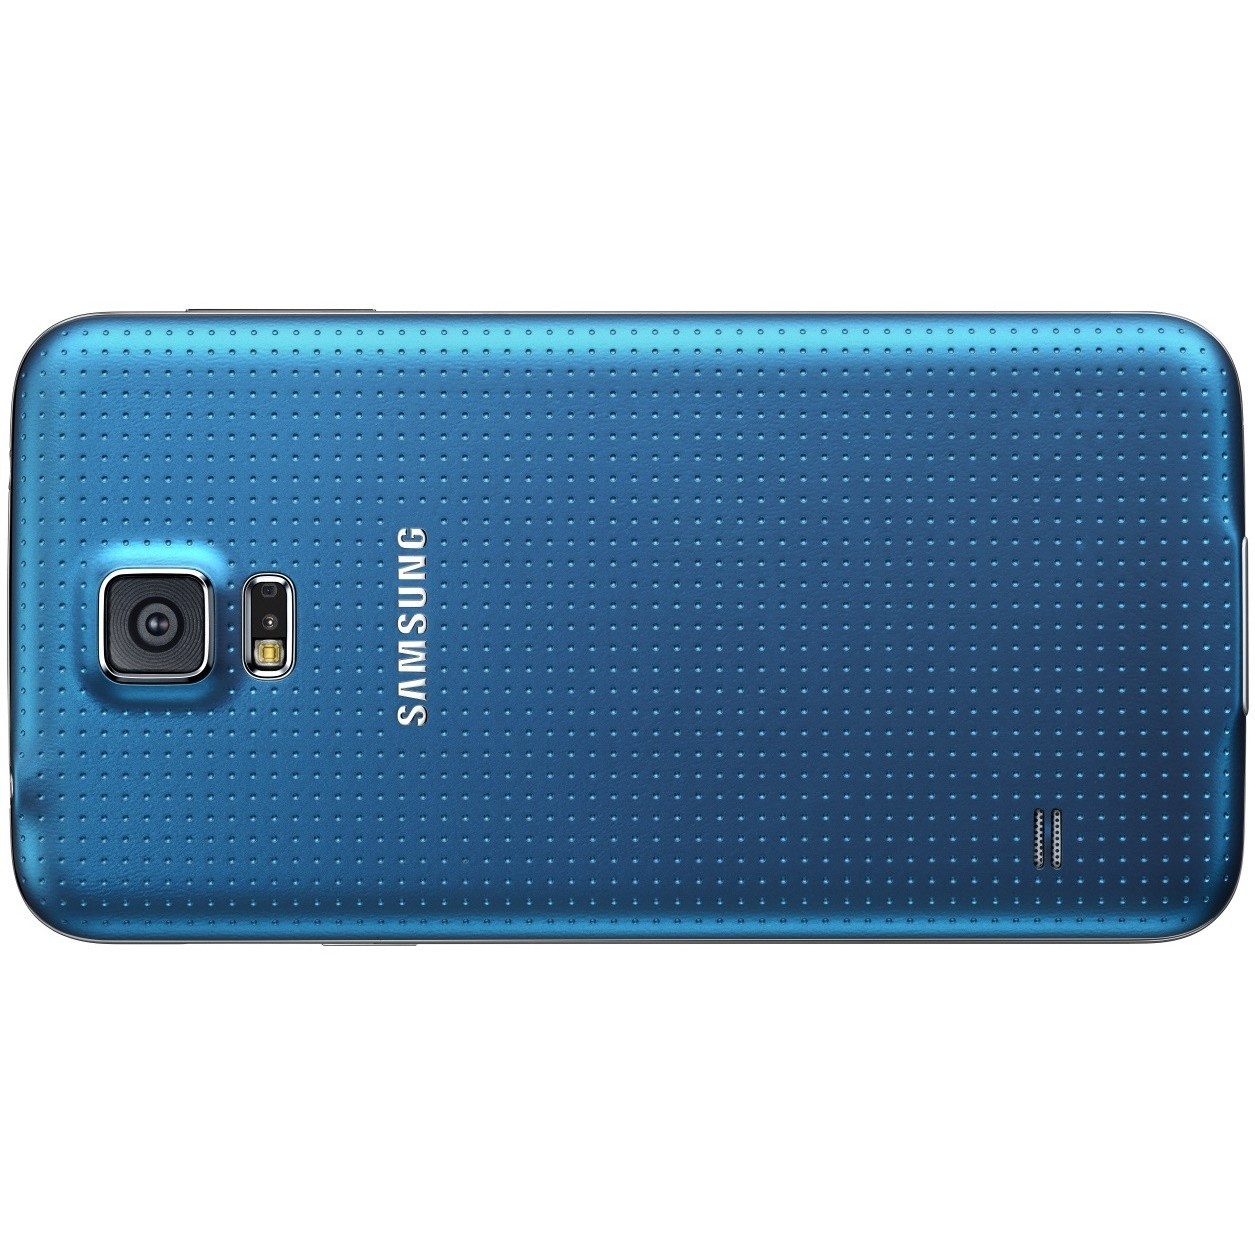 Samsung Galaxy s5 SM-g900f 16gb. Samsung Galaxy s5 Duos SM-g900fd. Samsung SM g900f фото. G900 1s.